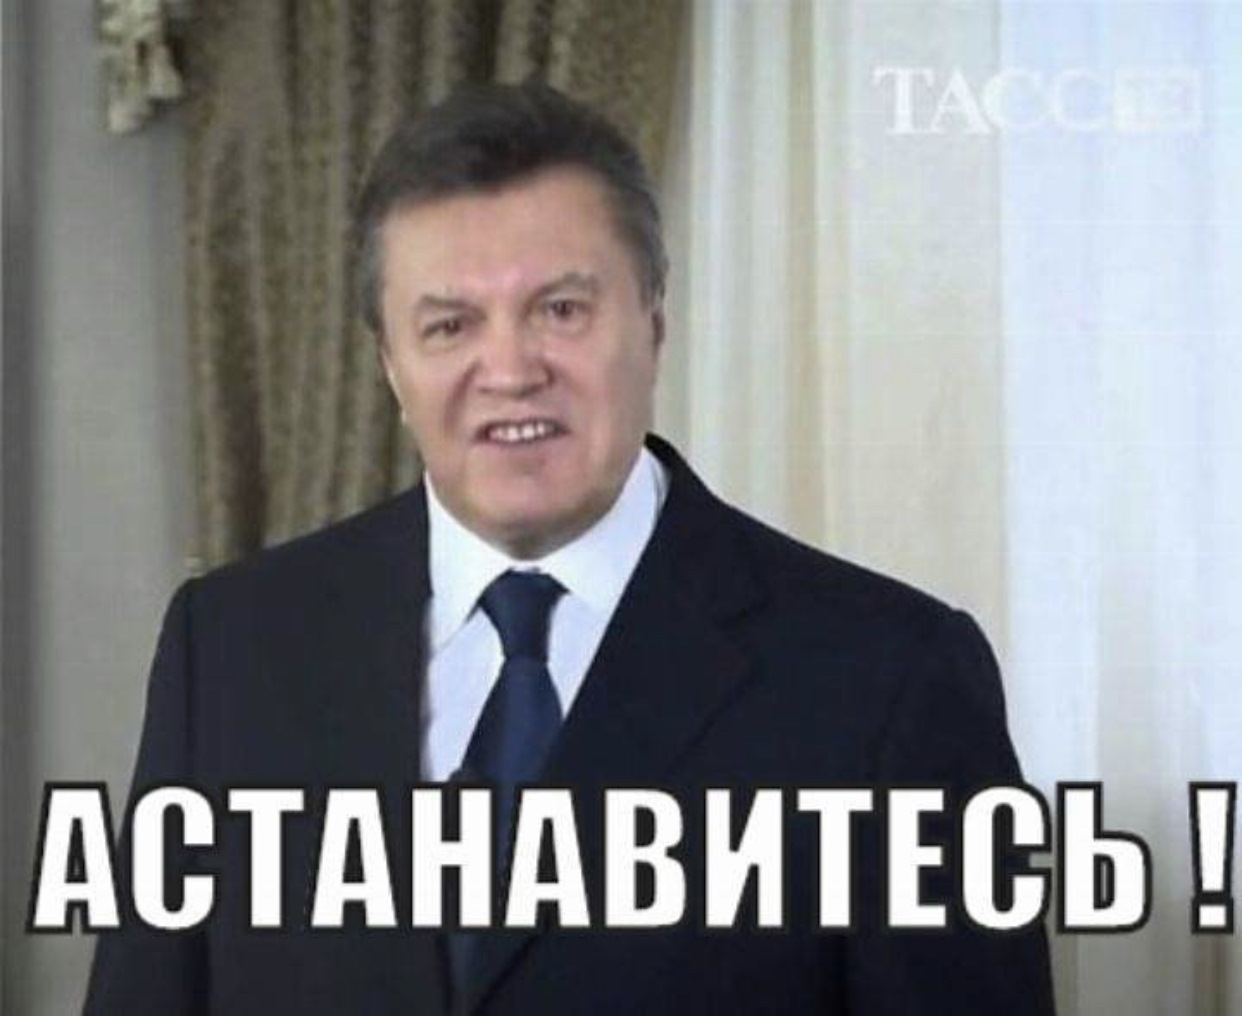 Хватит остановитесь. Остановитесь Янукович. Остановитесь Янукович Лукашенко. АСТАНАВИТЕСЬ картинка.